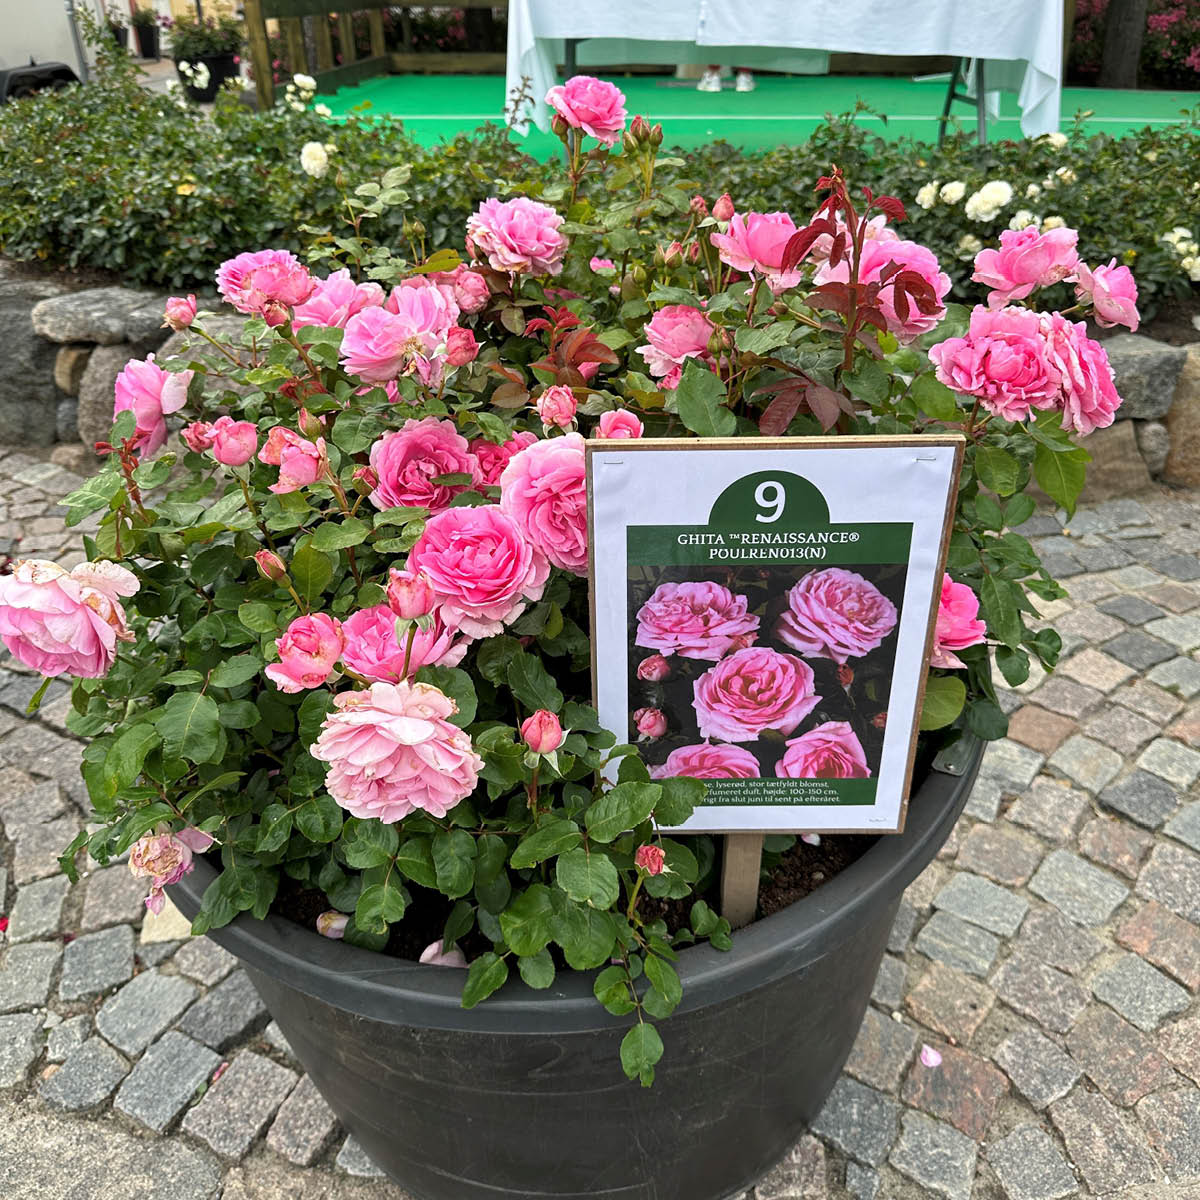 Årets rose 2023 blev denne rosa rose med navnet Ghita ™Renaissance® Poulren013(N)